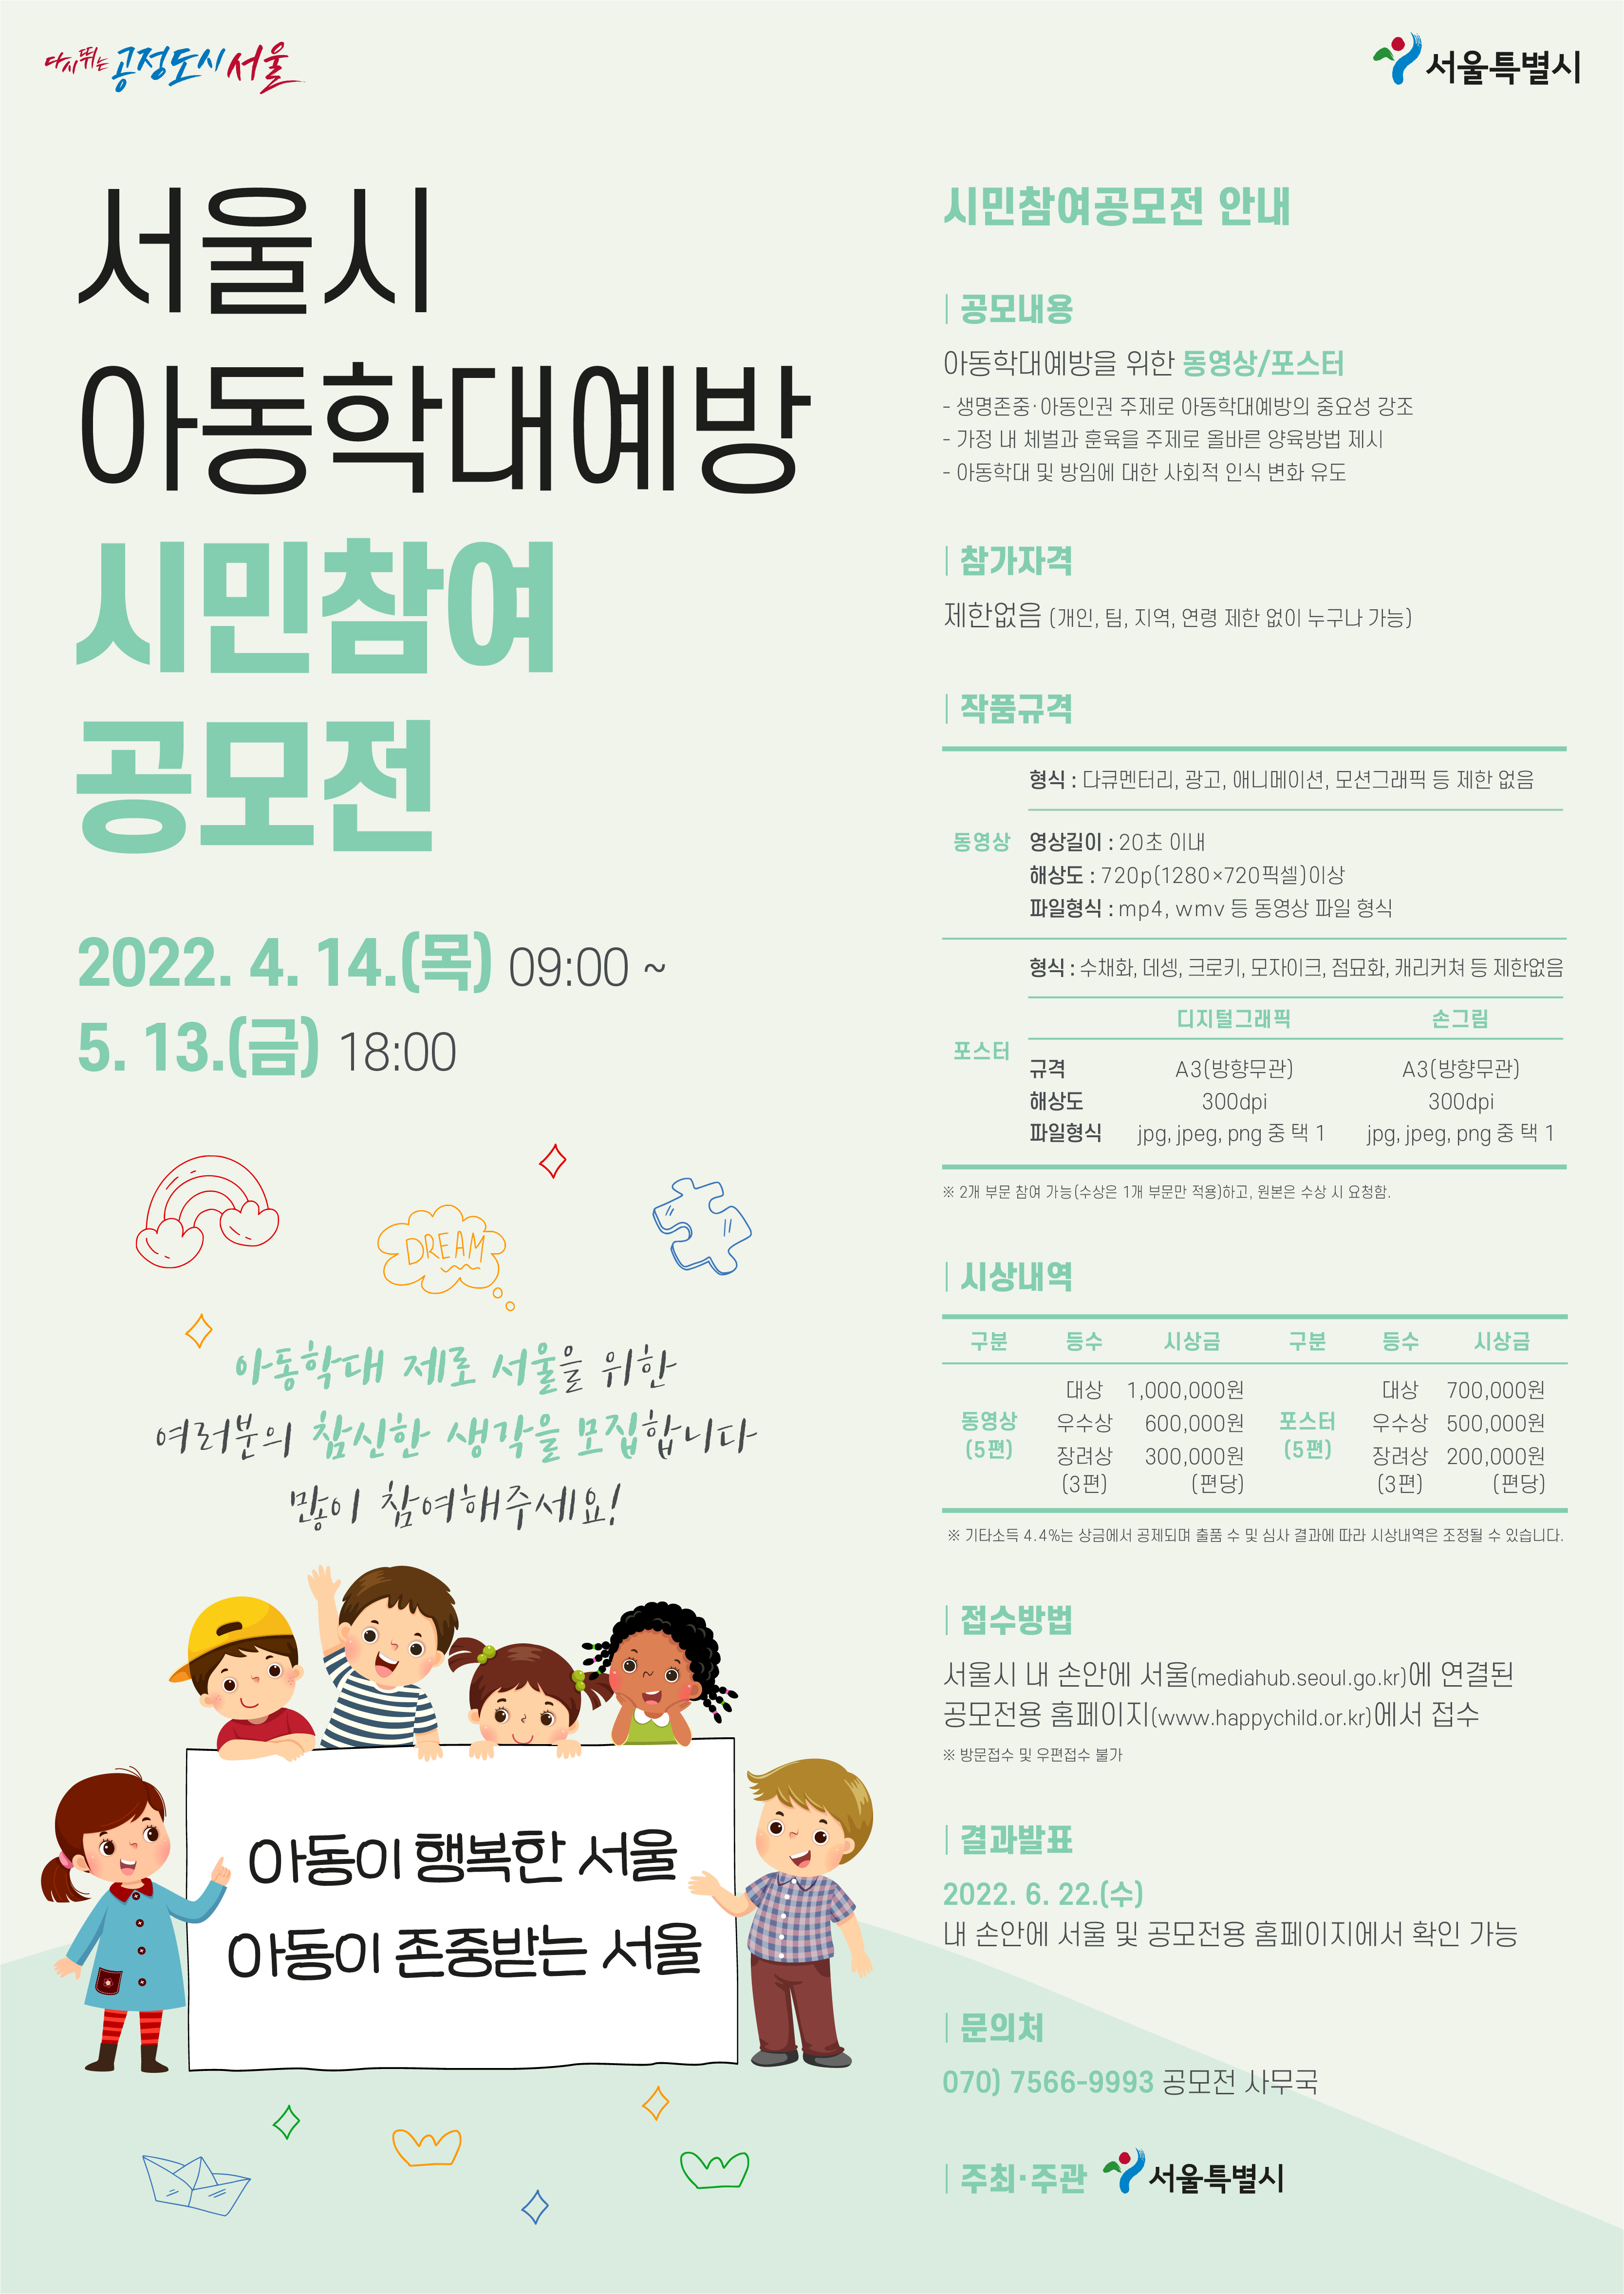 [서울특별시] 서울시 아동학대예방 시민참여 공모전 안내